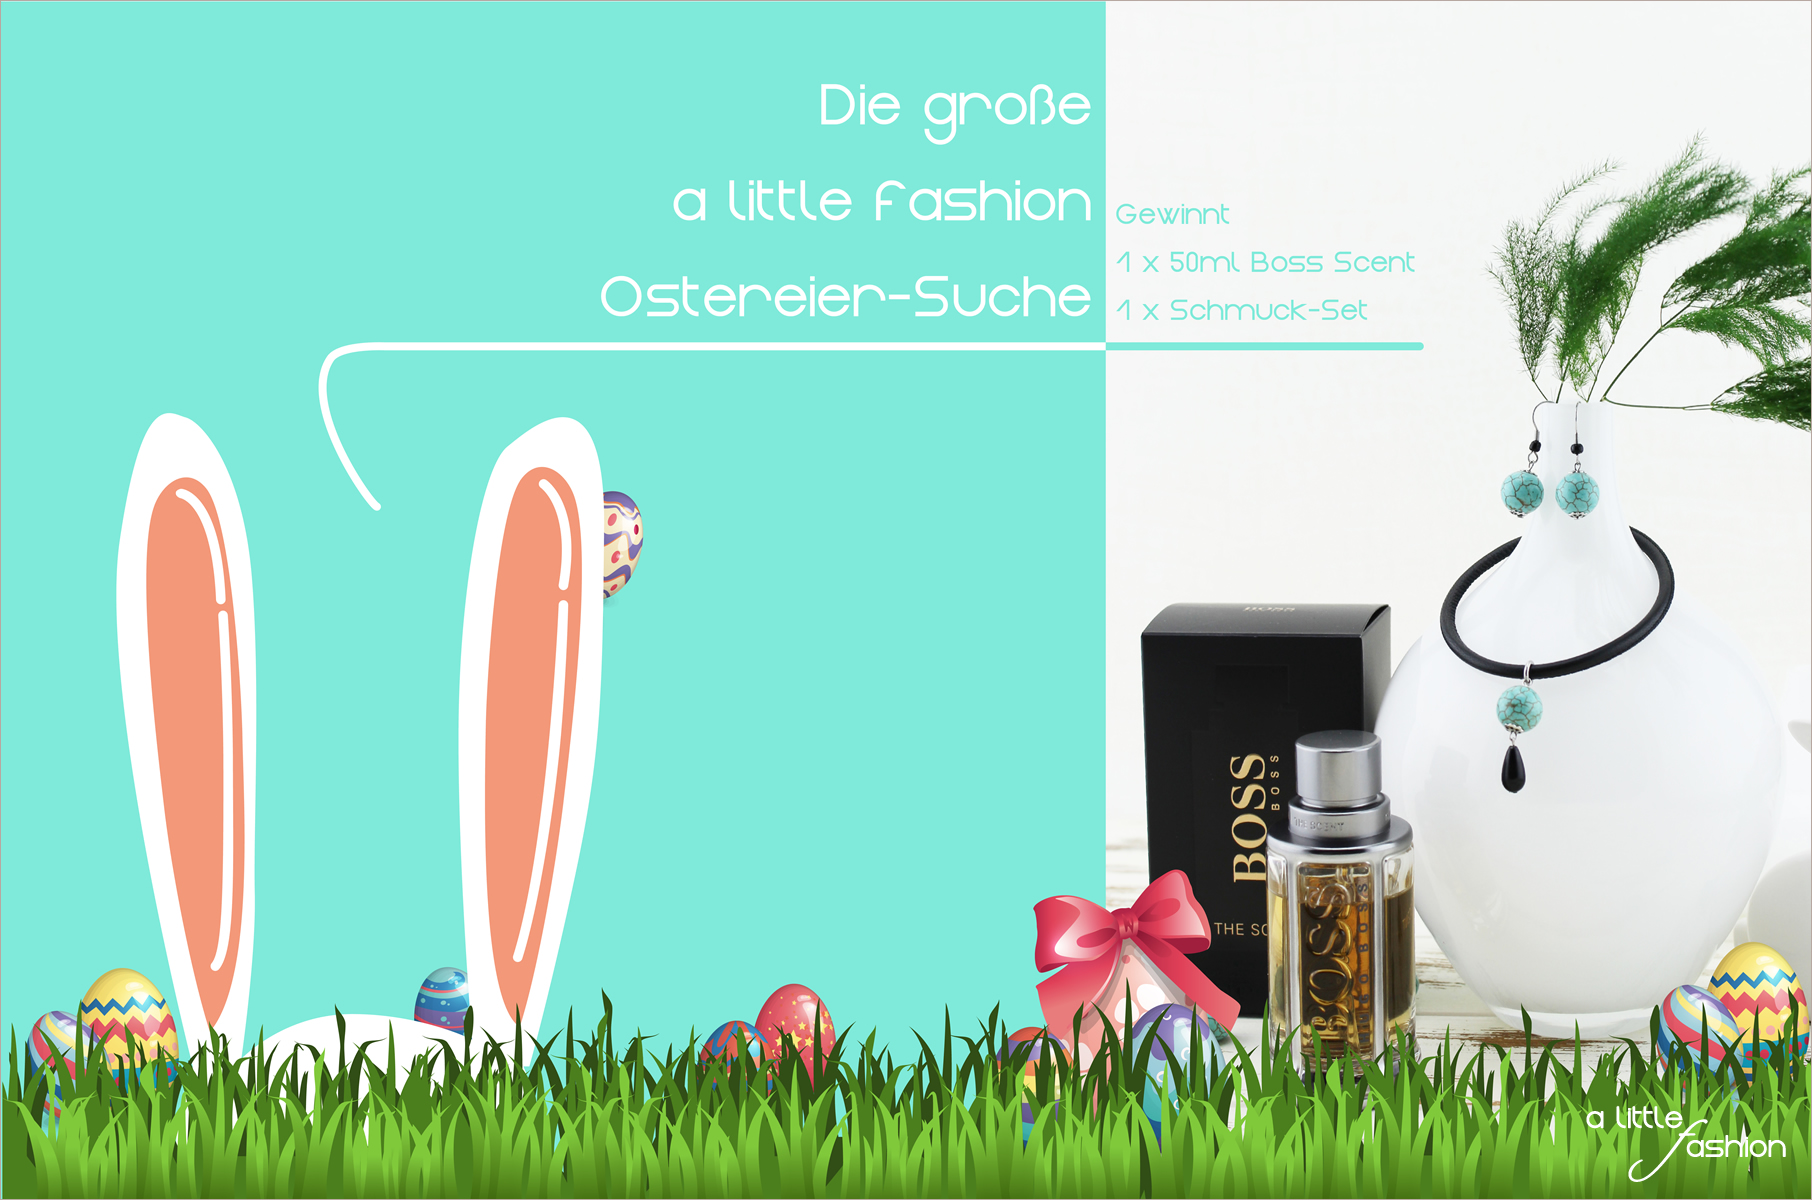 Die große A Little Fashion Ostereiersuche + Giveaway | A Little Fashion | www.a-little-fashion.com/beauty/die-grosse-a-little-fashion-ostereiersuche-giveaway